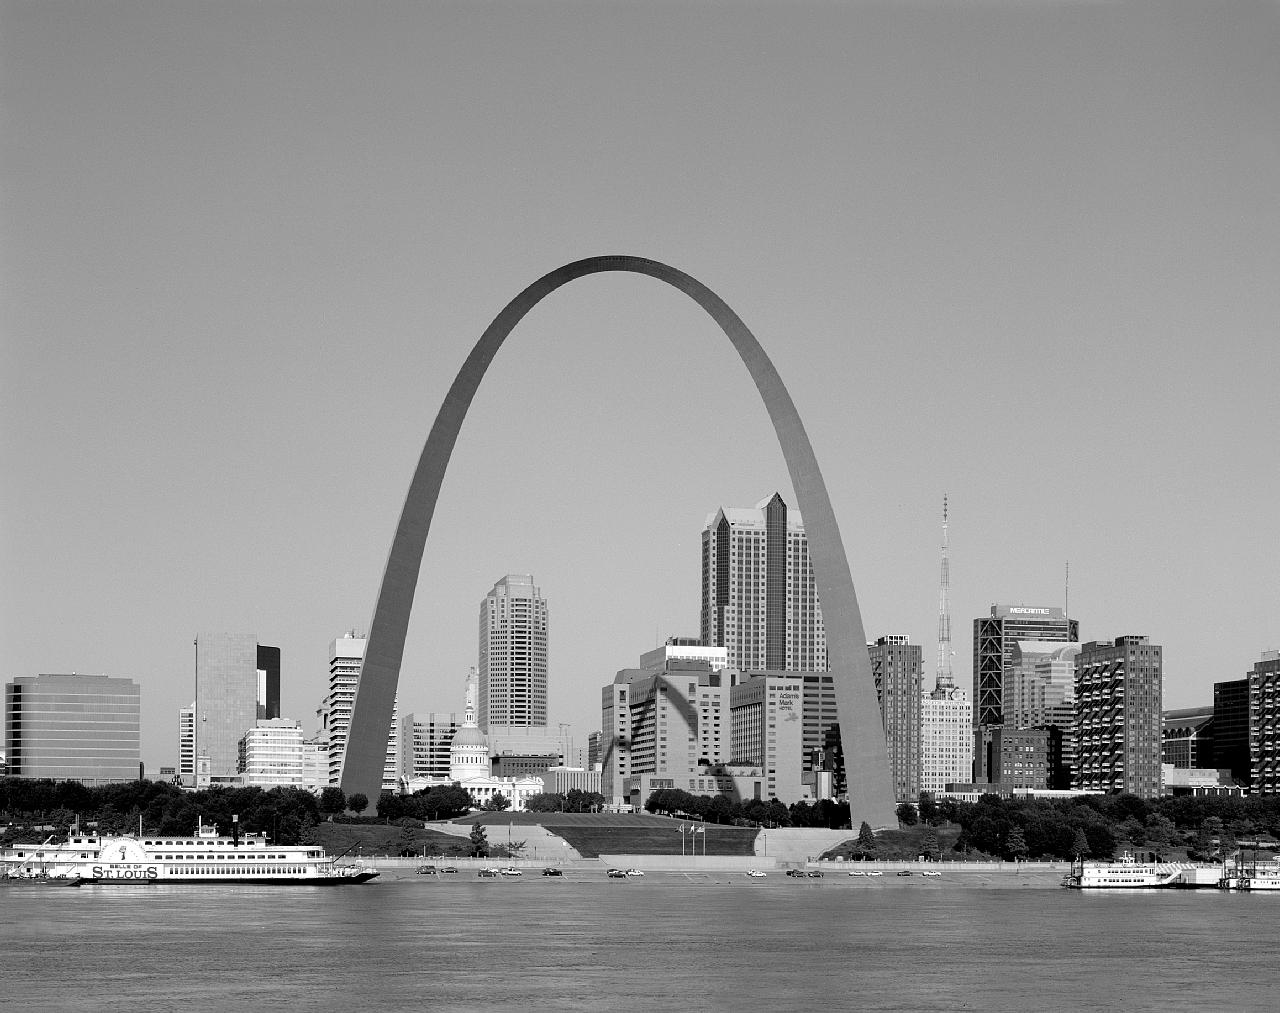 Photographie en noir et blanc d’une arche monumentale avec un fleuve au premier plan et des immeubles à l’arrière-plan.